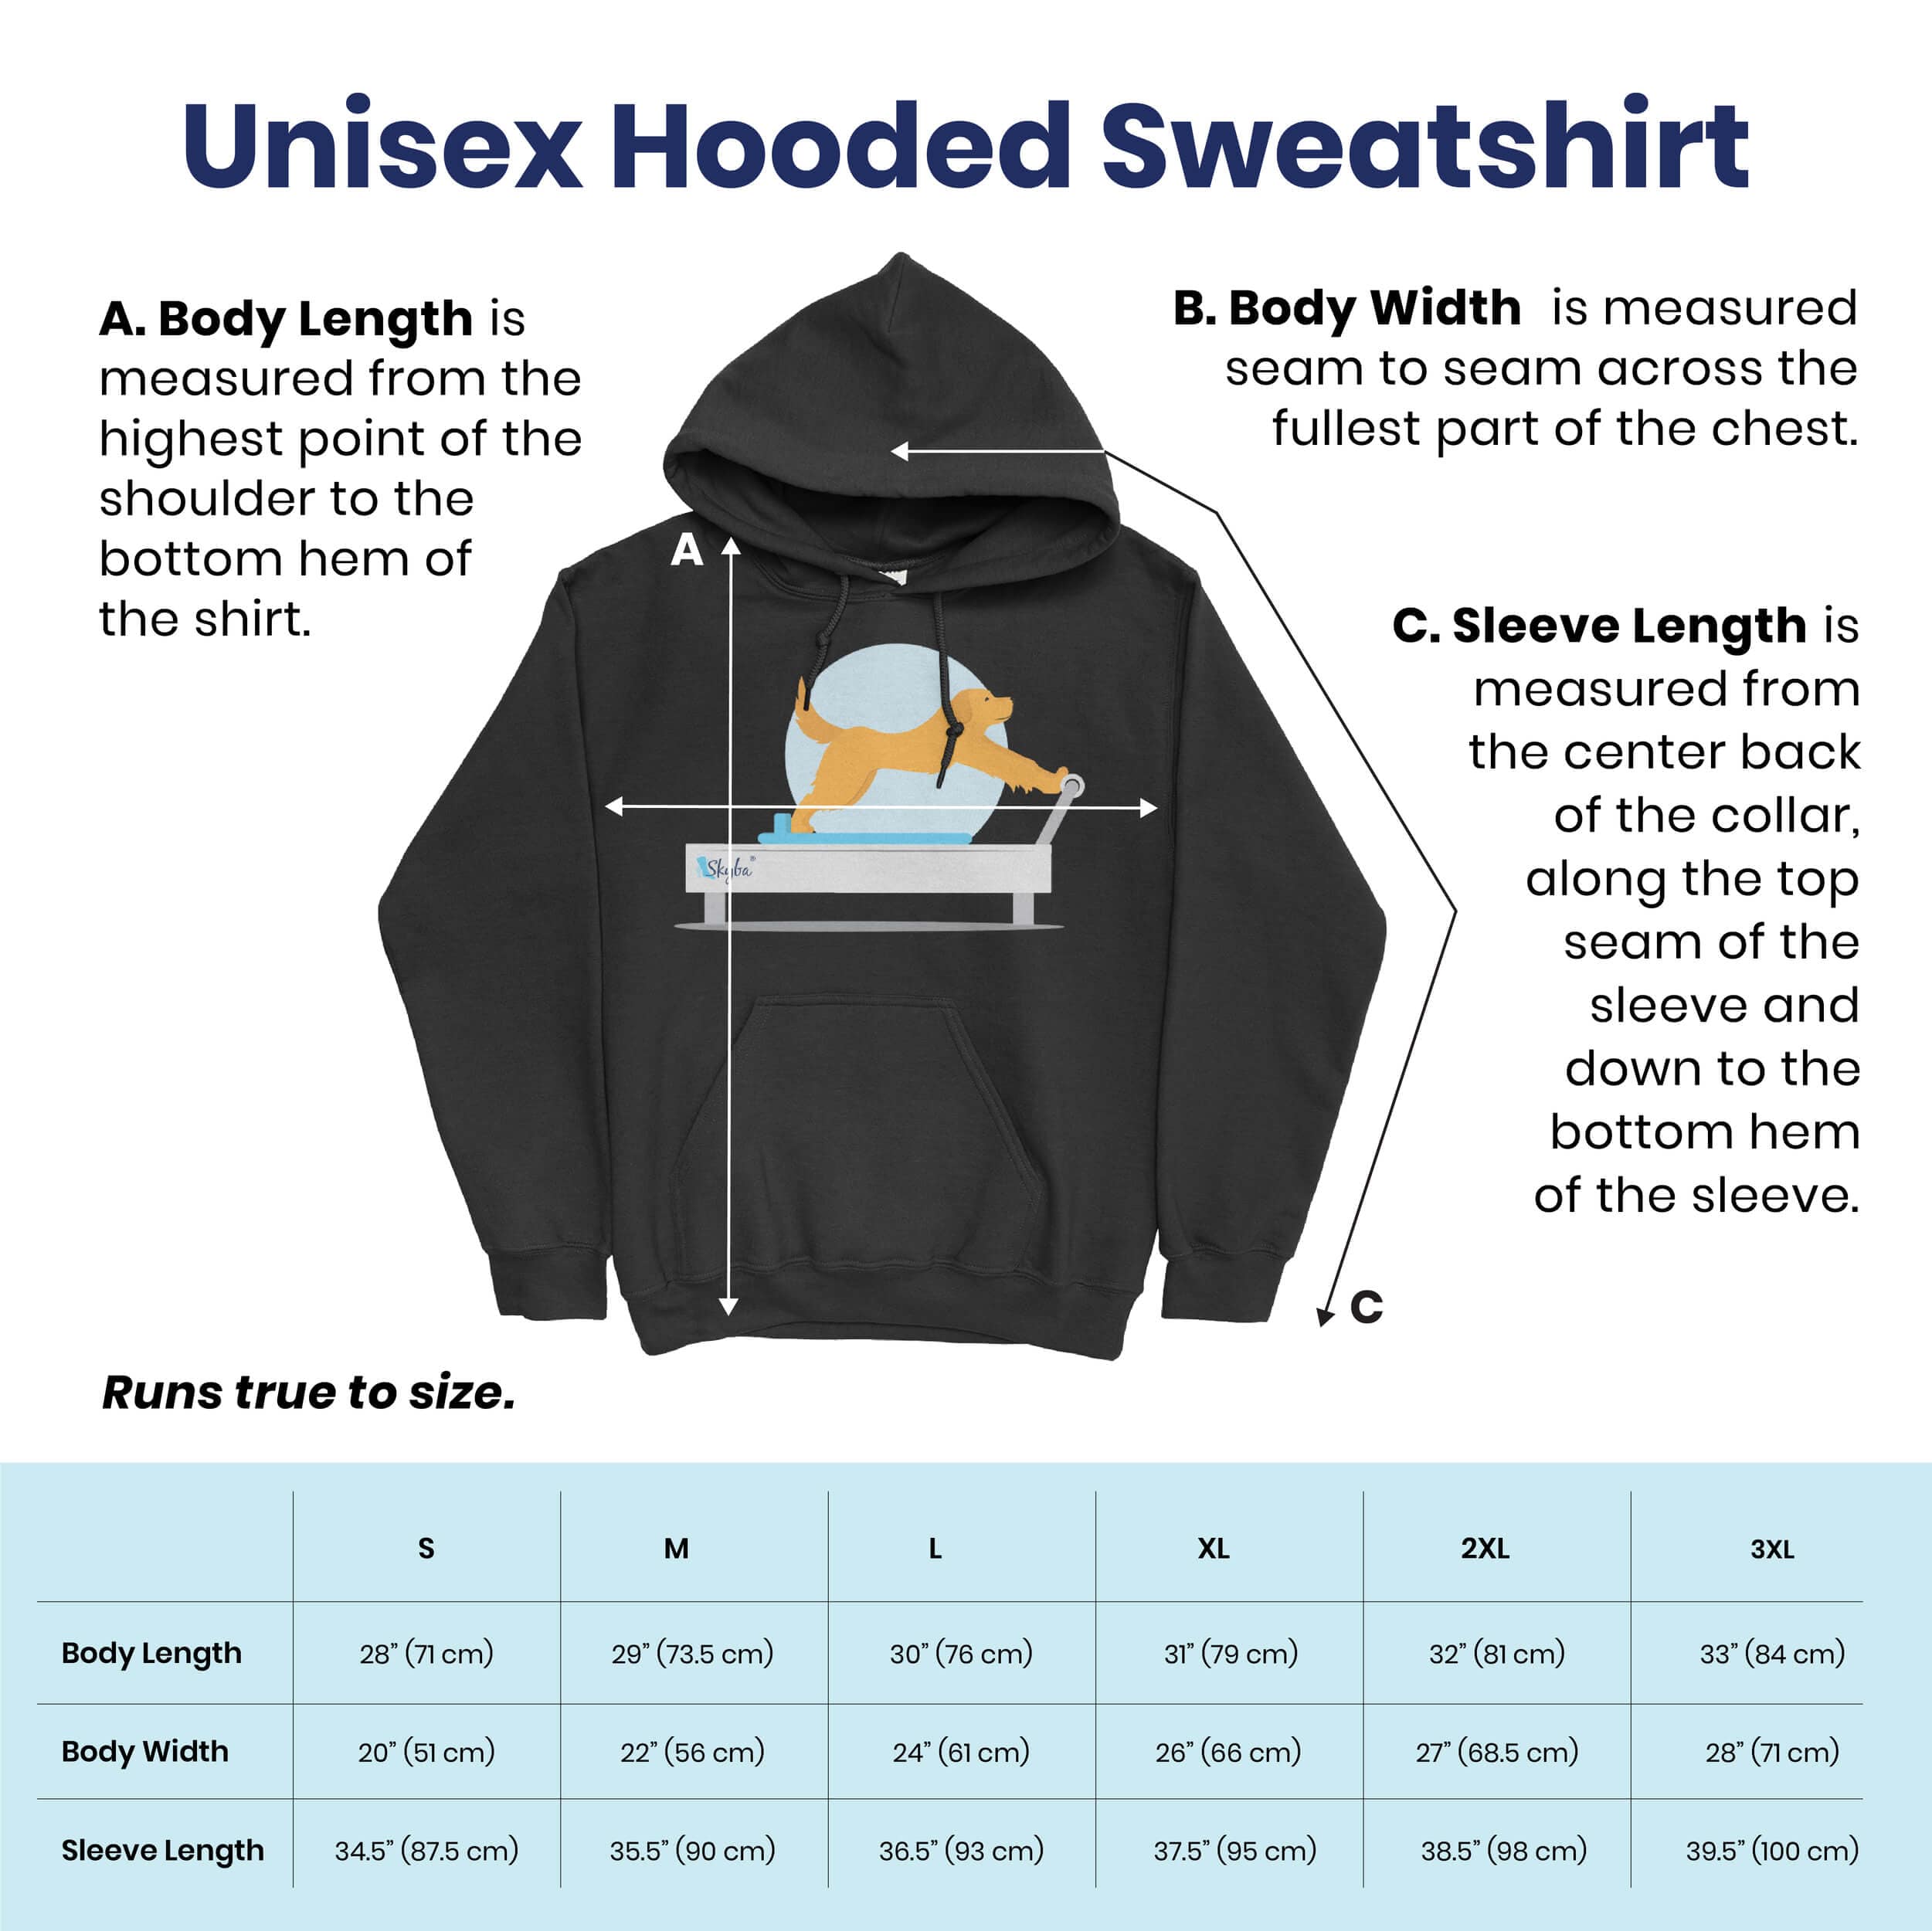 Panda Long Stretch - Cozy Hooded Sweatshirt Skyba Hoodie